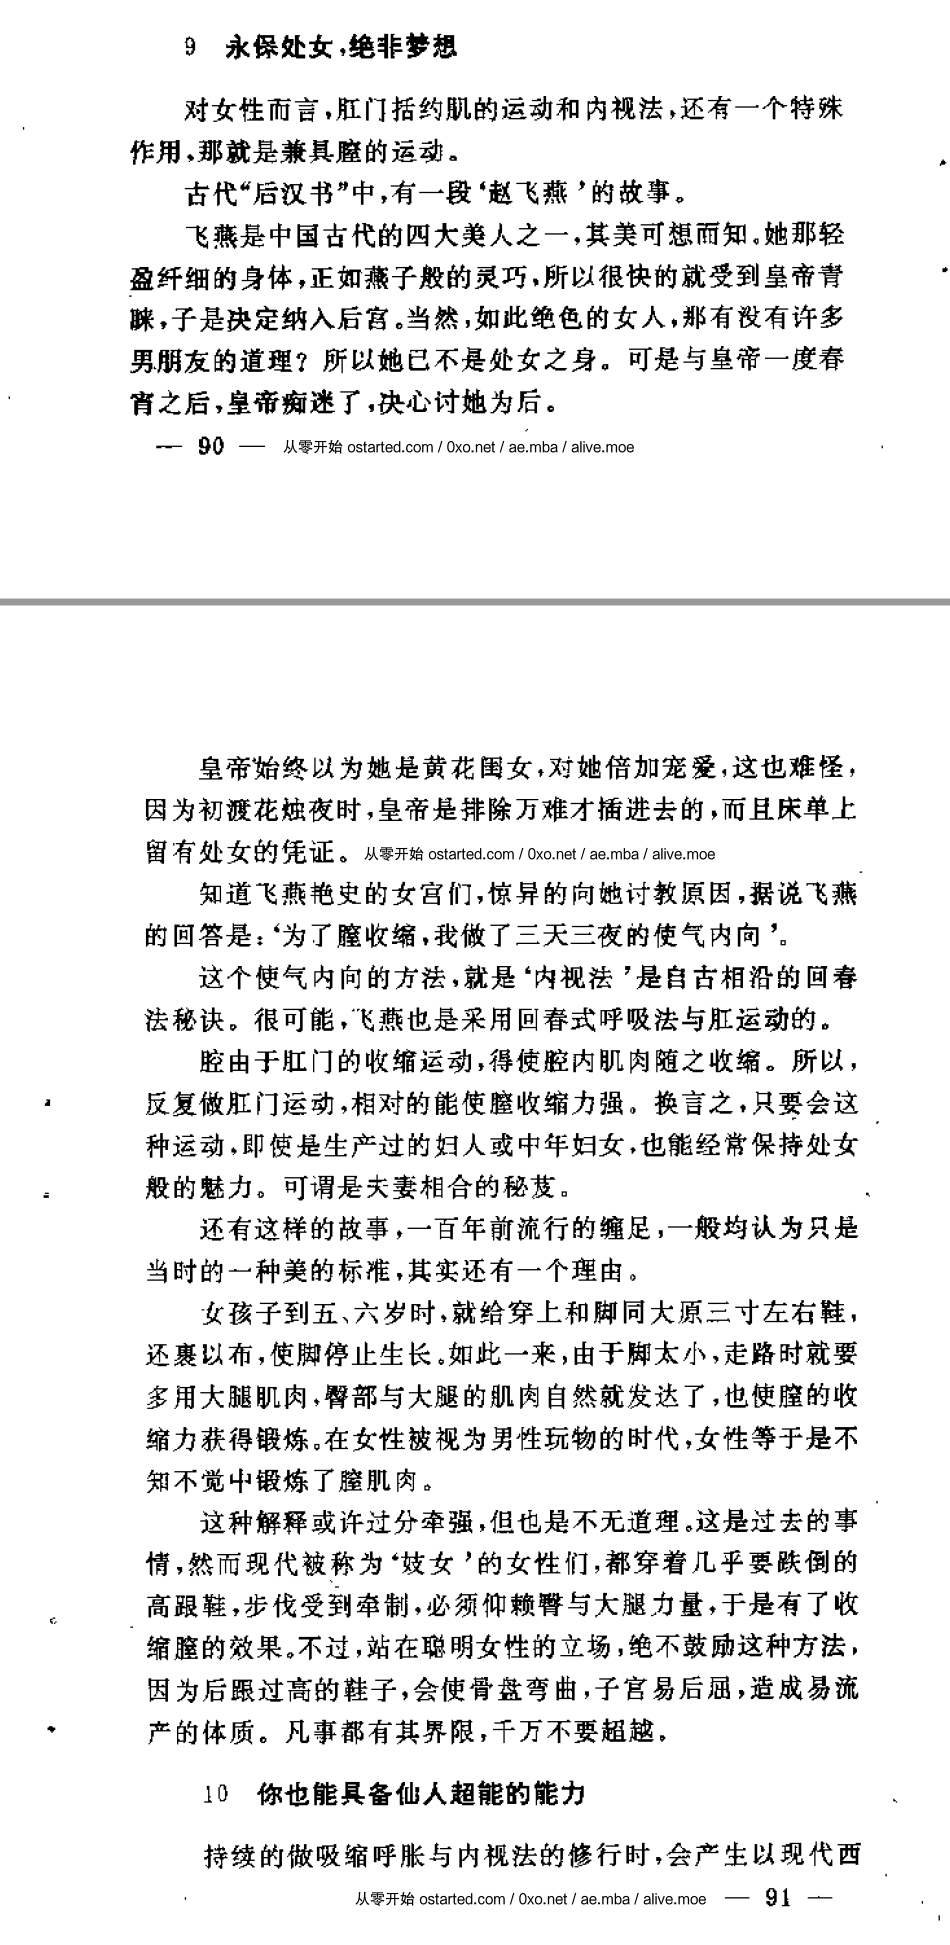 《珍藏男子回春秘诀》1989年 徐平 扫描版无水印PDF下载 - 第2张图片